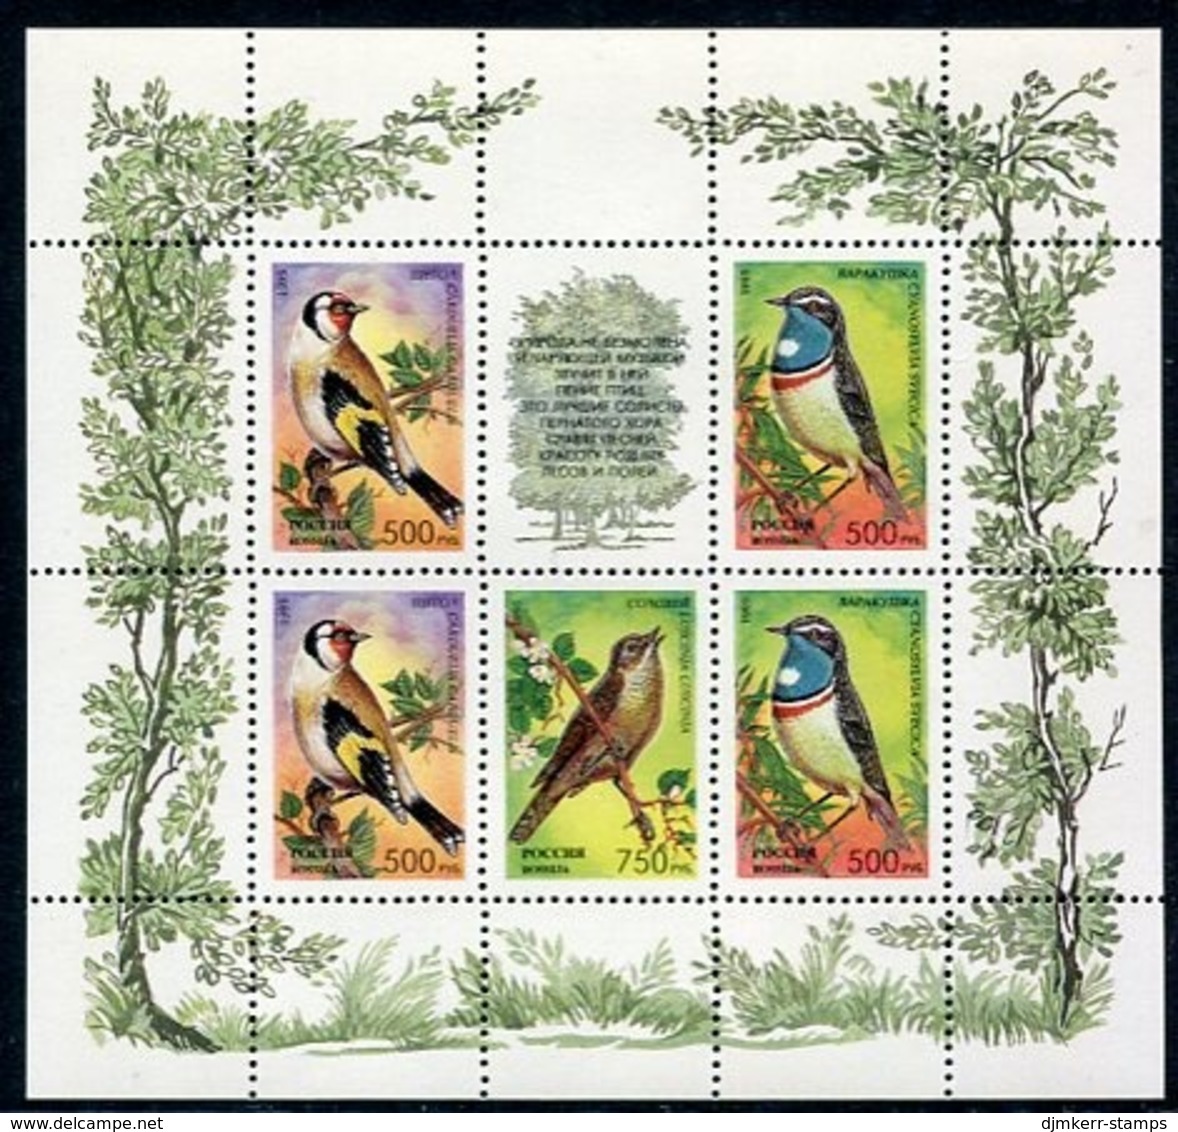 RUSSIA 1995 Song Birds Sheetlets MNH / **.  Michel 440-44 Kb (2) - Blocks & Kleinbögen